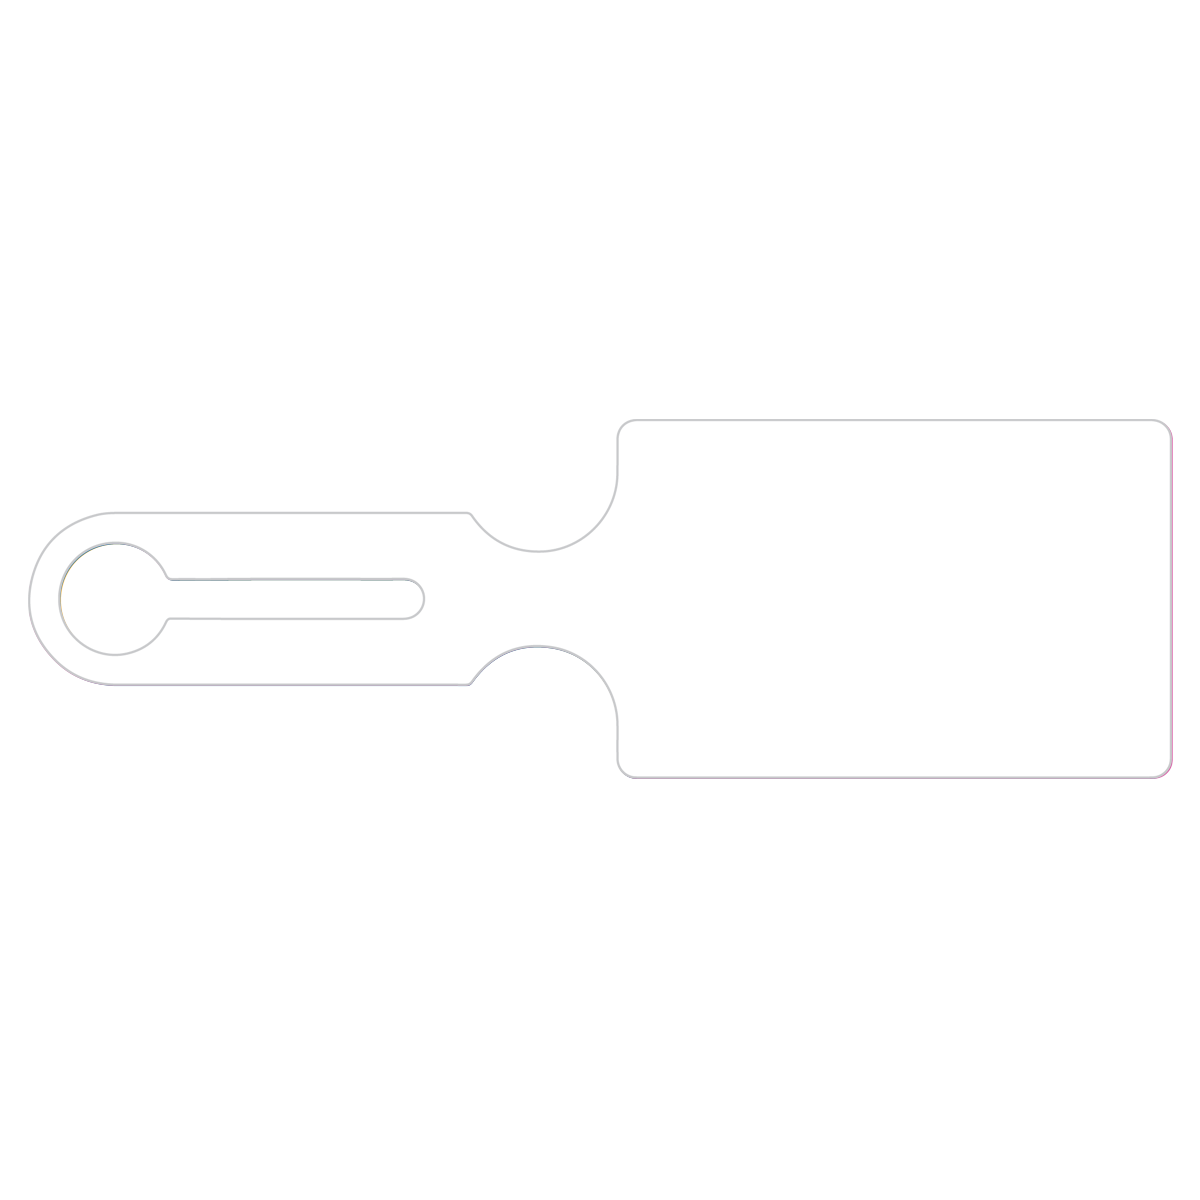 One-Loop Tag Image